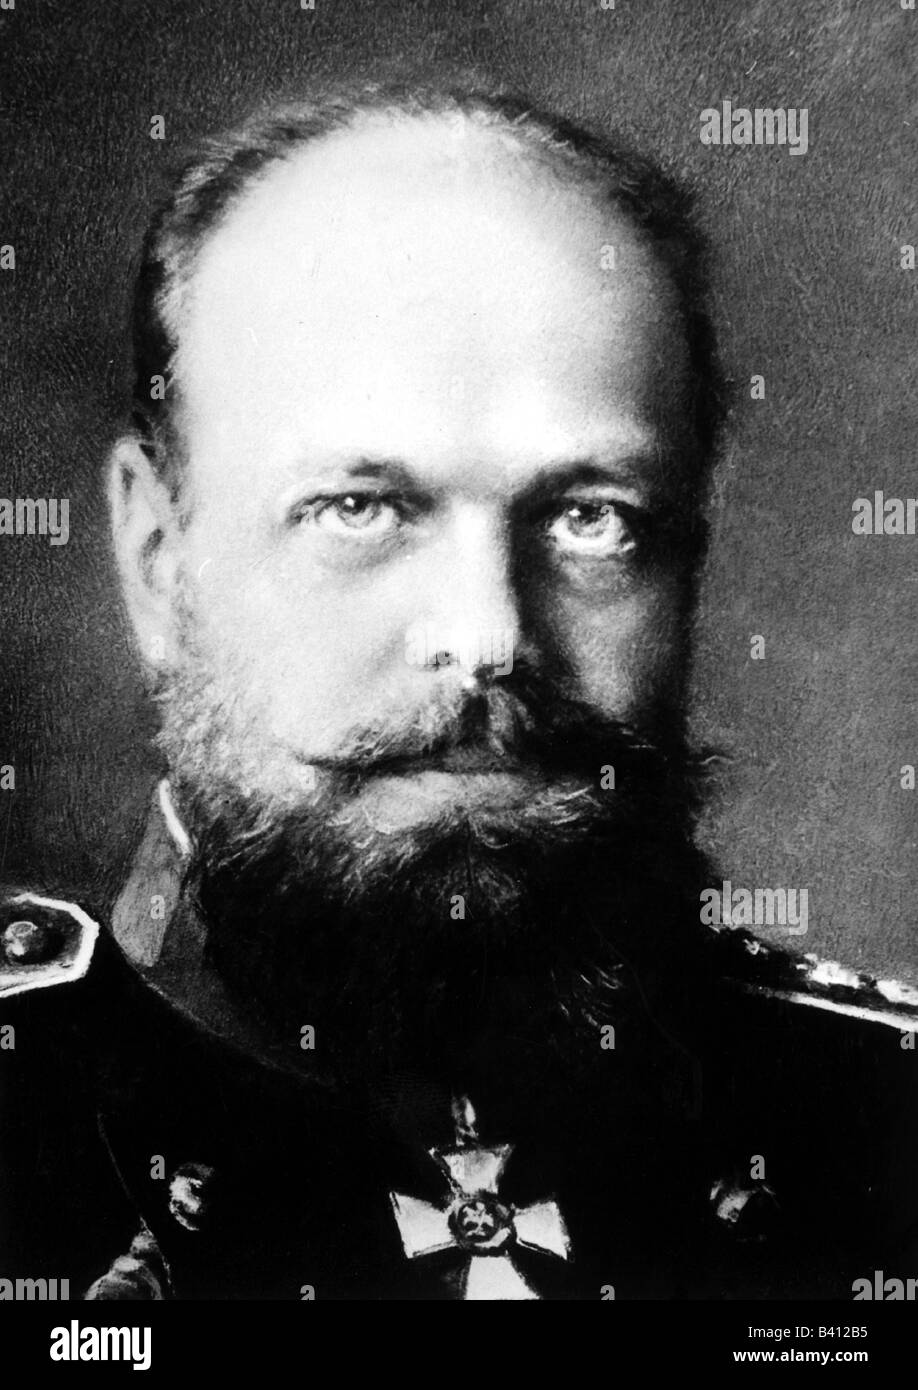 Alexander III Alexandrovich, 10.3.1845 - 1.11.1894, Emperor of Russia 1.3.1881 - 1.11.1894, portrait, , Stock Photo